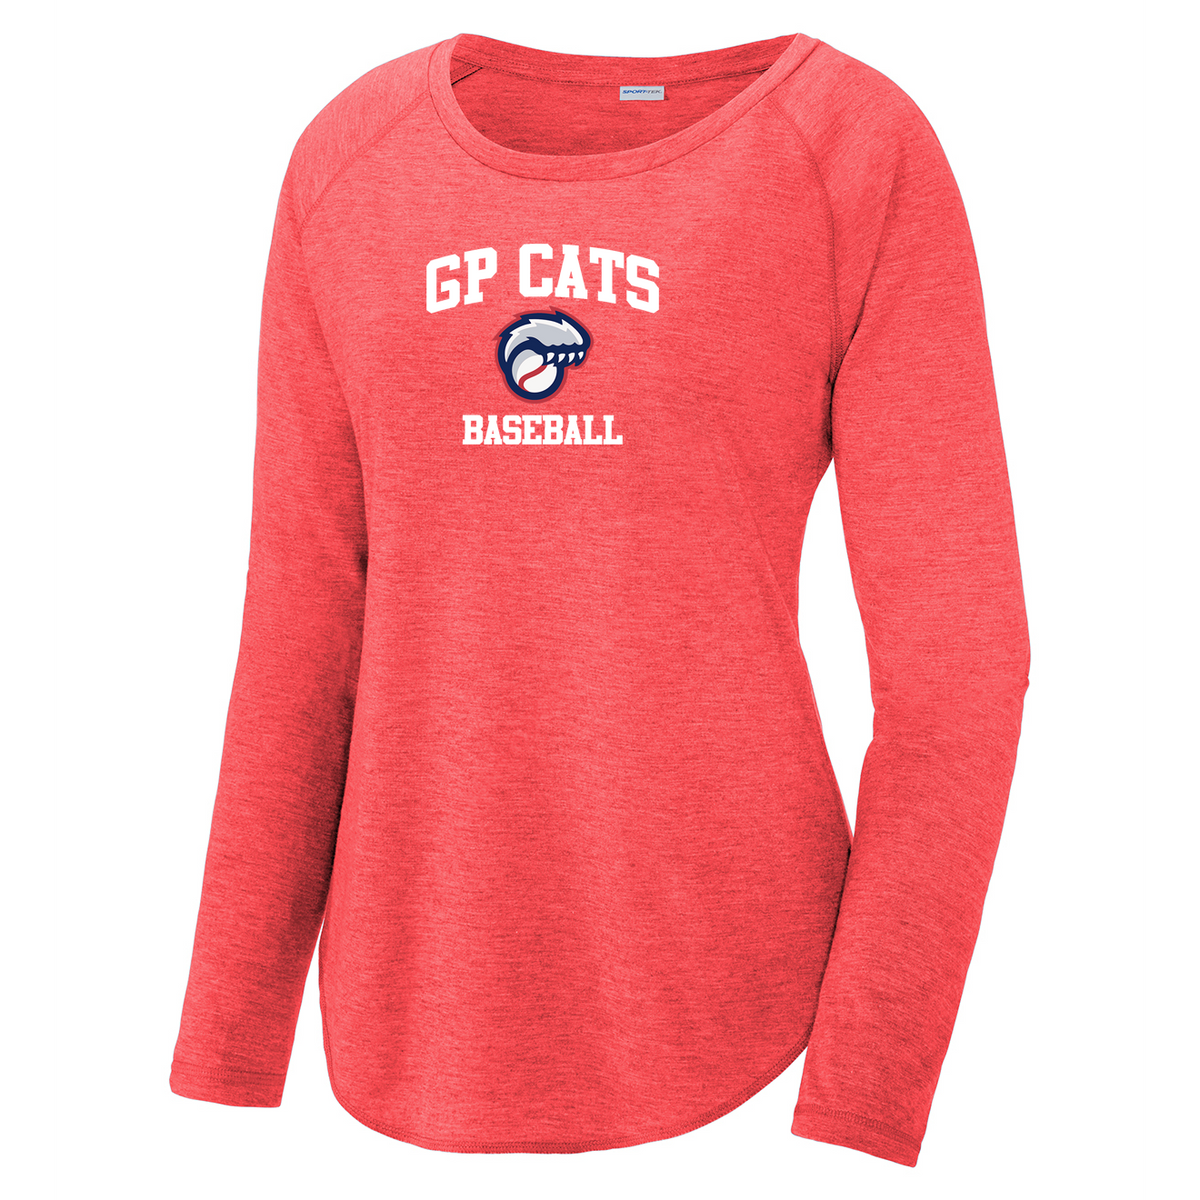 GP Cats Baseball Women's Raglan Long Sleeve CottonTouch